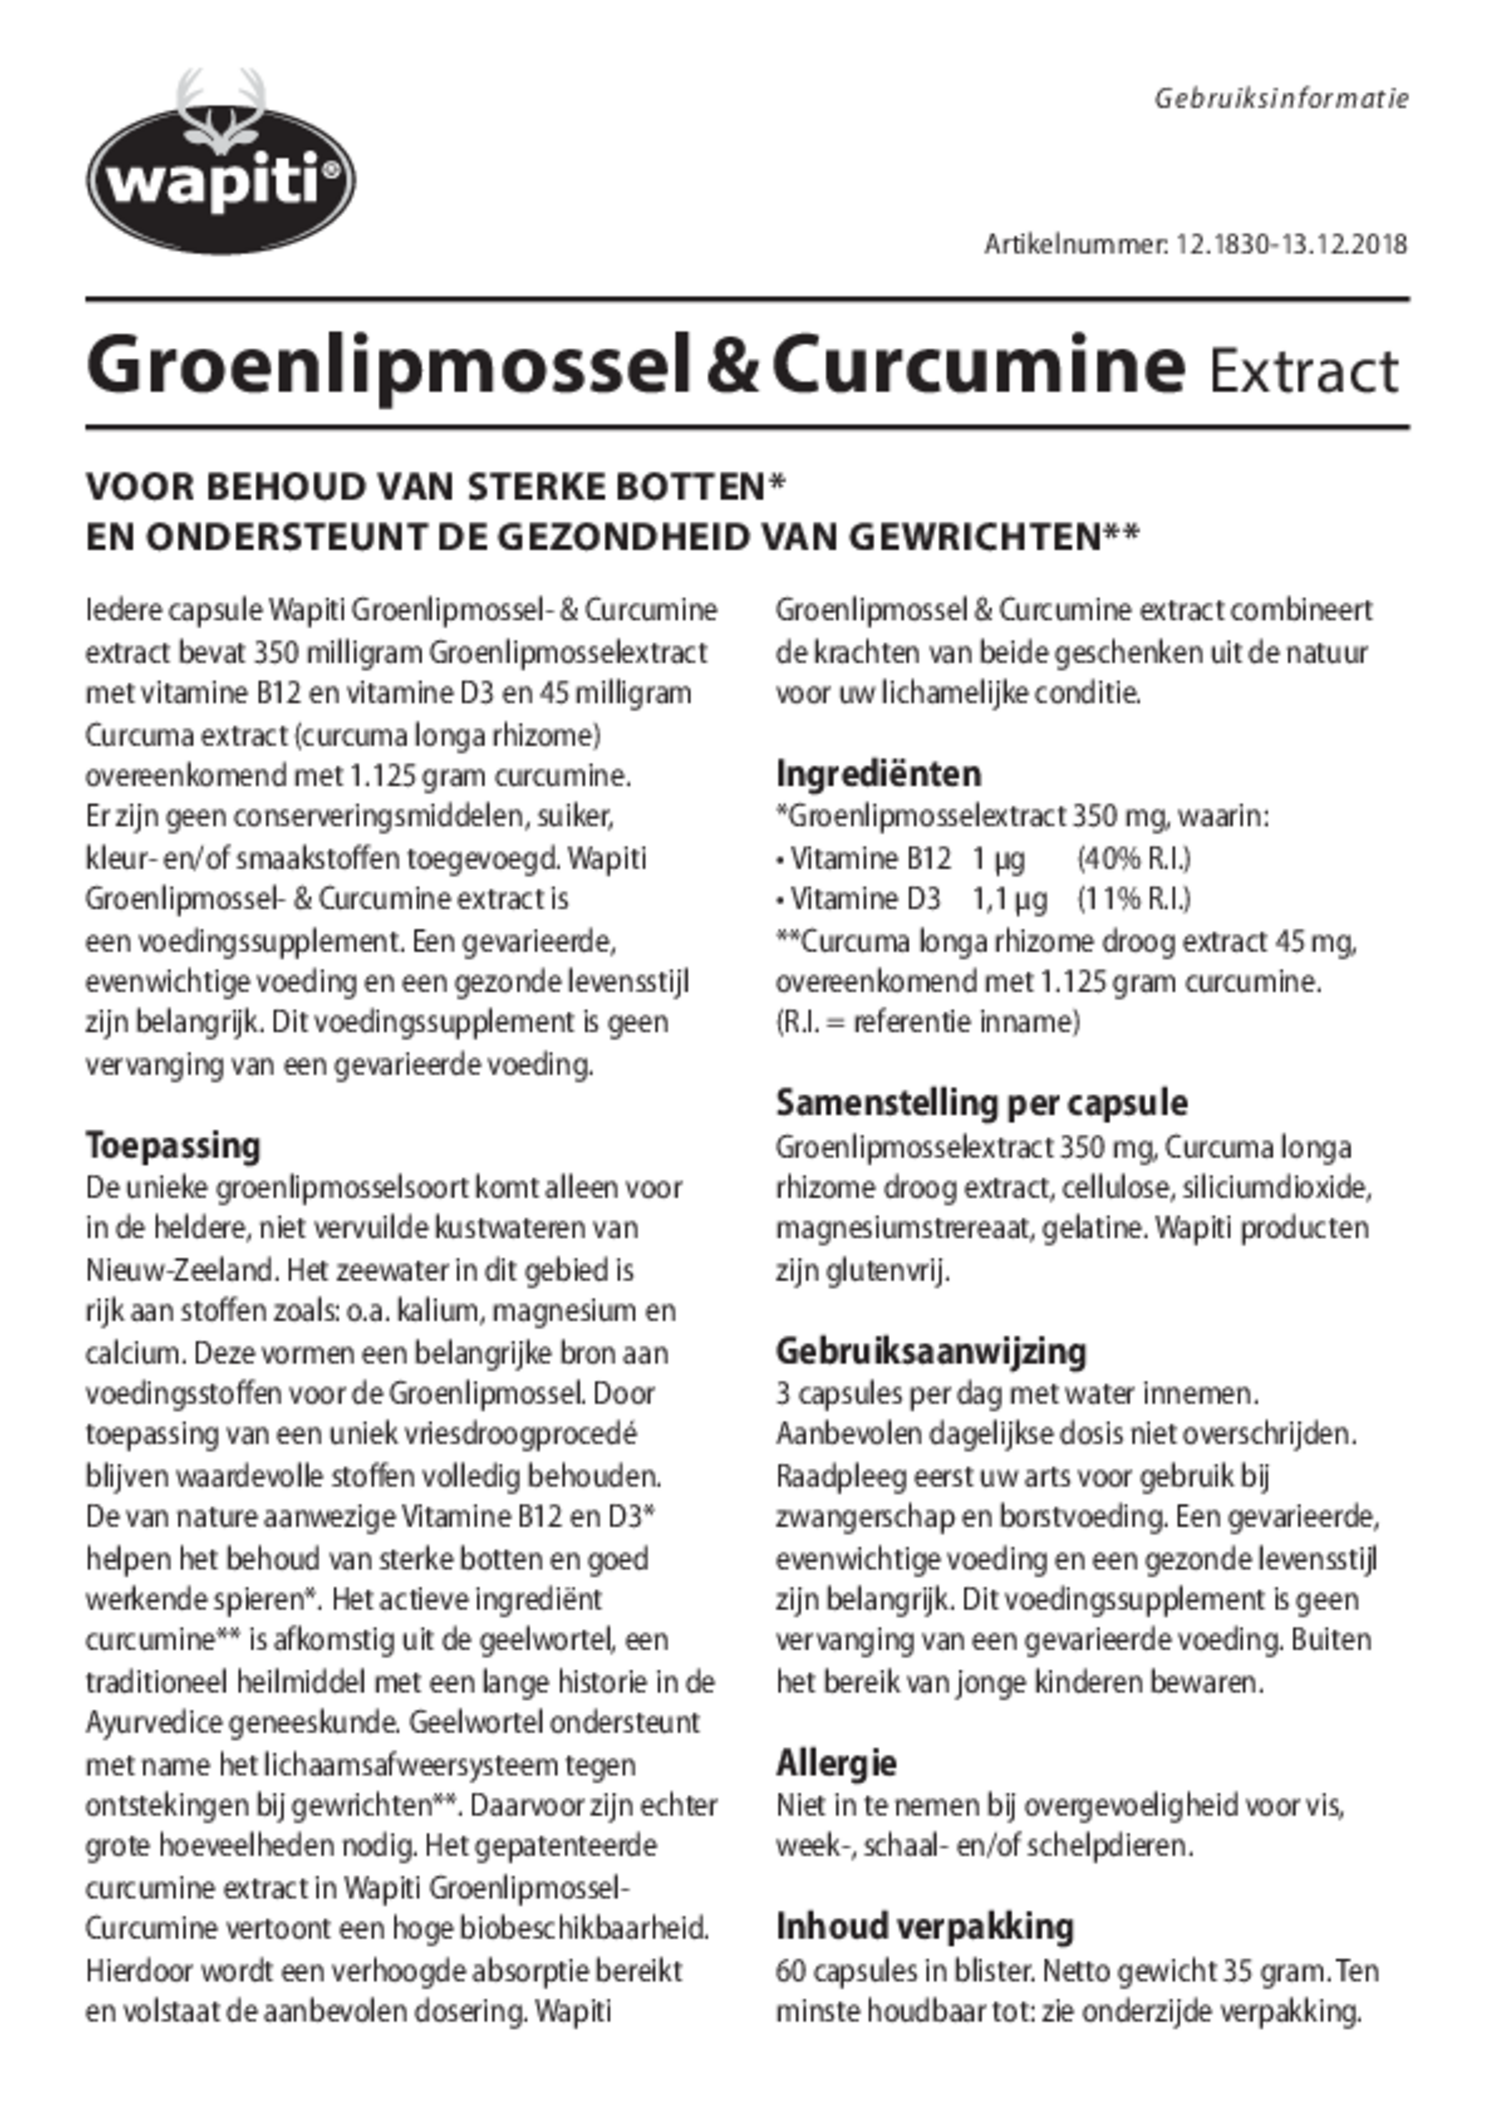 Groenlipmossel & Curcumine Extract Capsules afbeelding van document #1, gebruiksaanwijzing